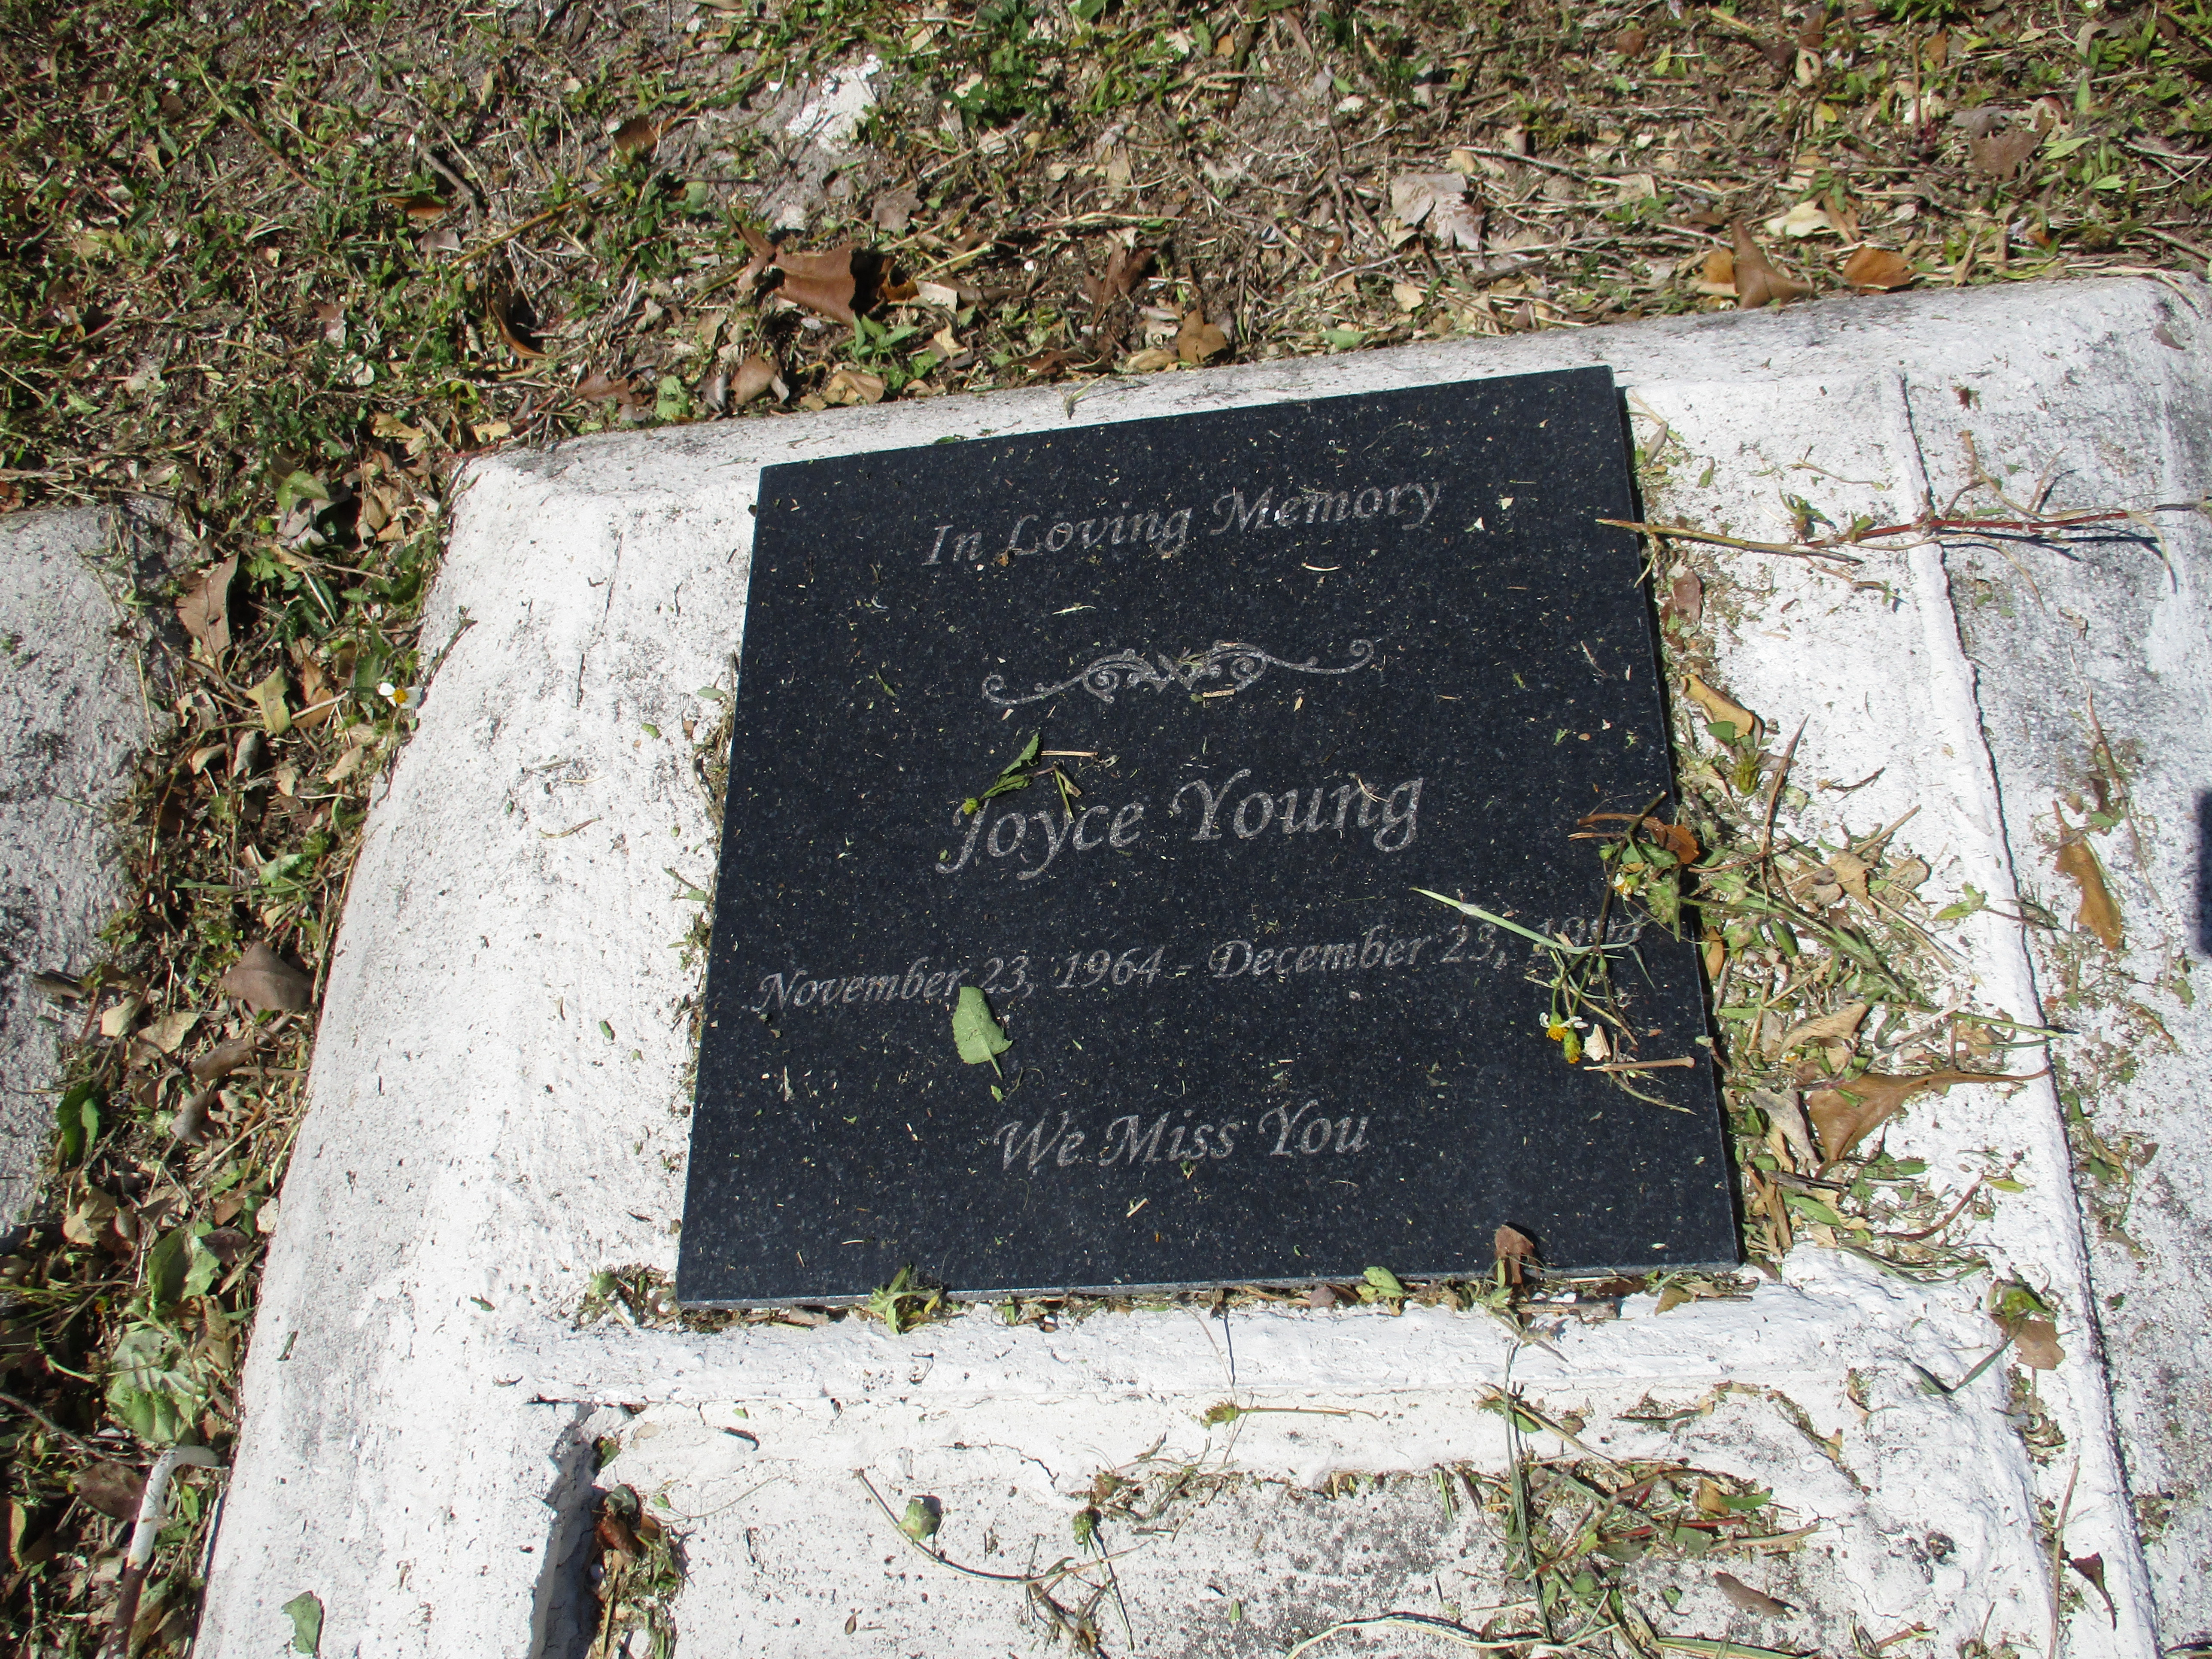 Joyce Young